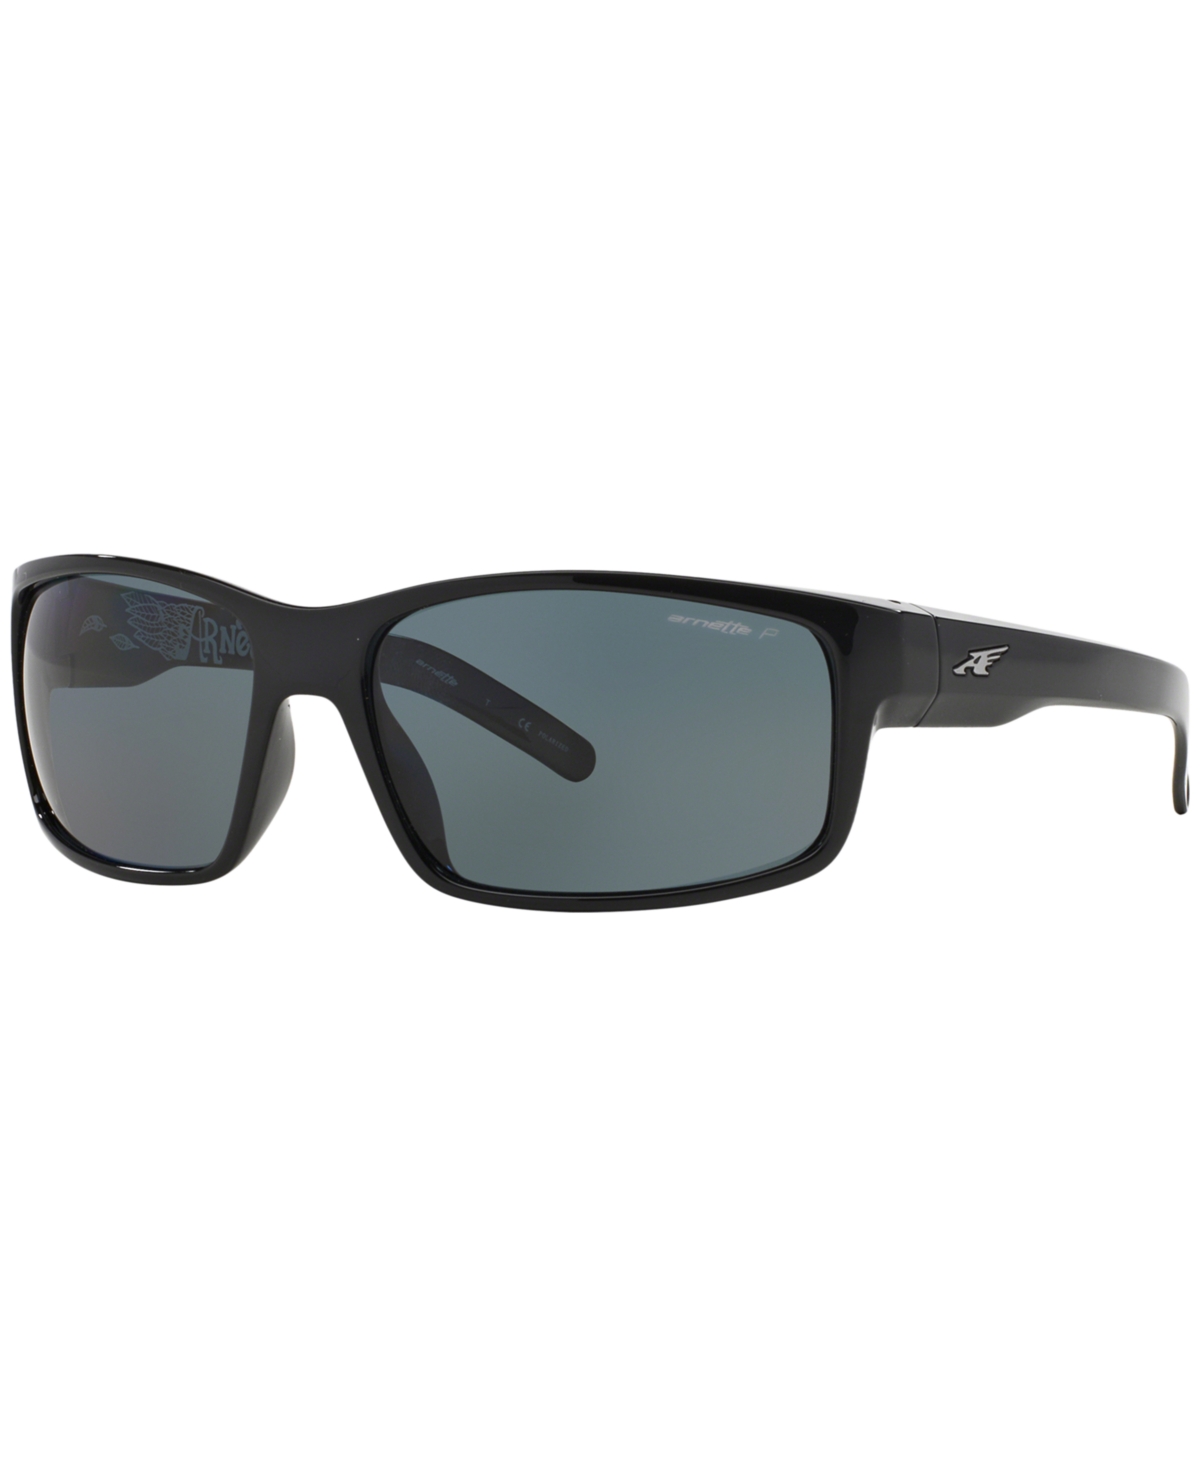 Polarized Polarized Sunglasses , AN4202 Fastball - BLACK/GREY POLAR